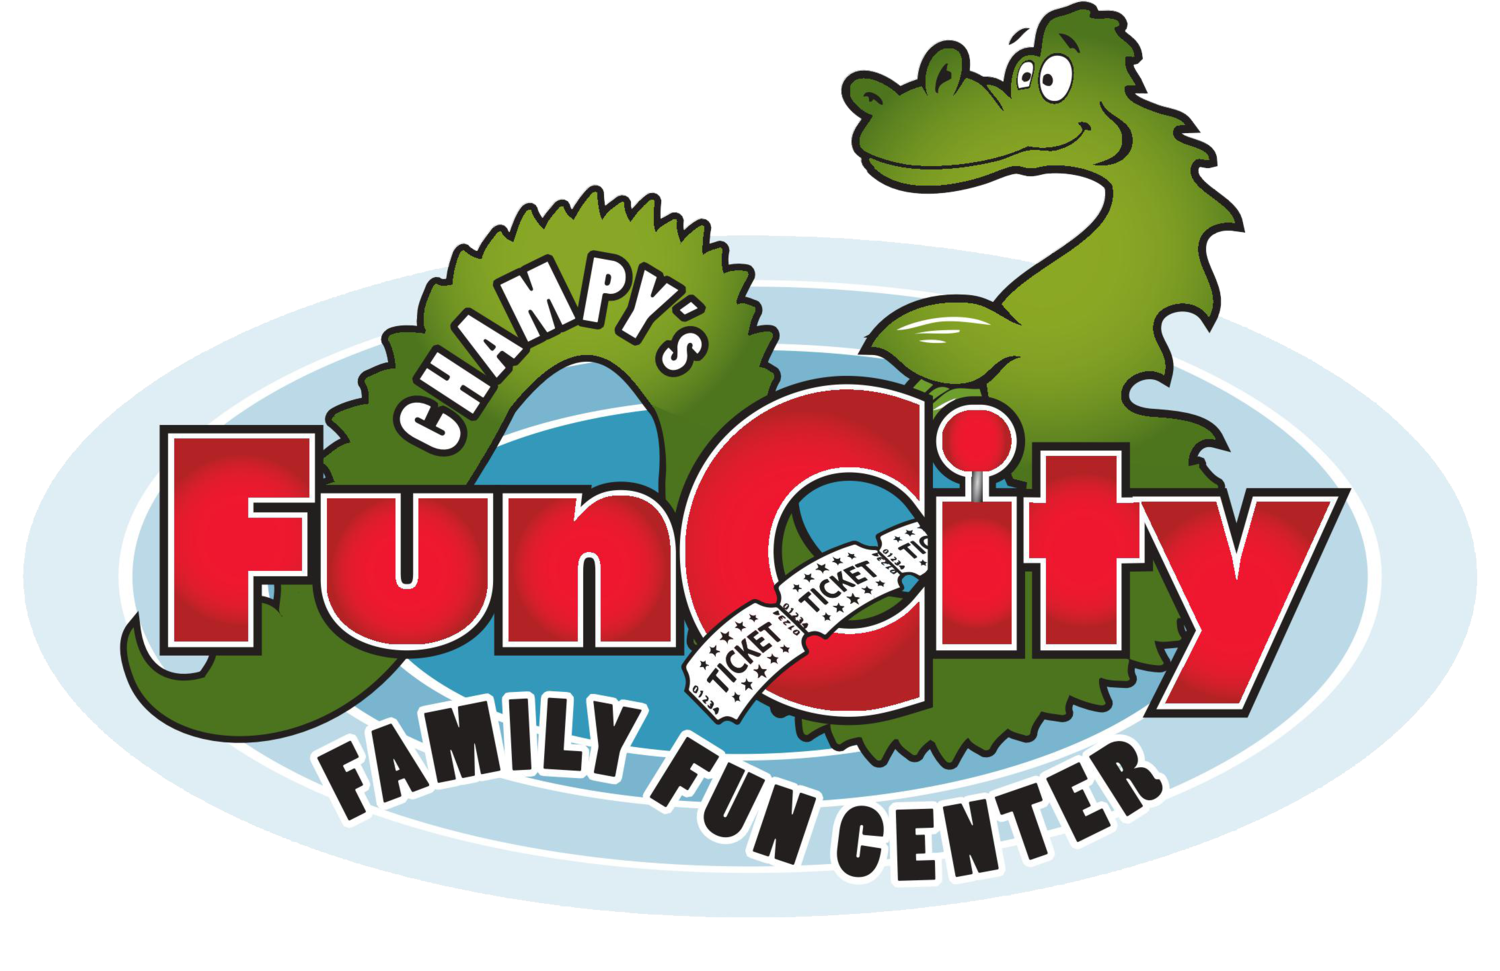 Champy's Fun City|Amusement Park|Entertainment